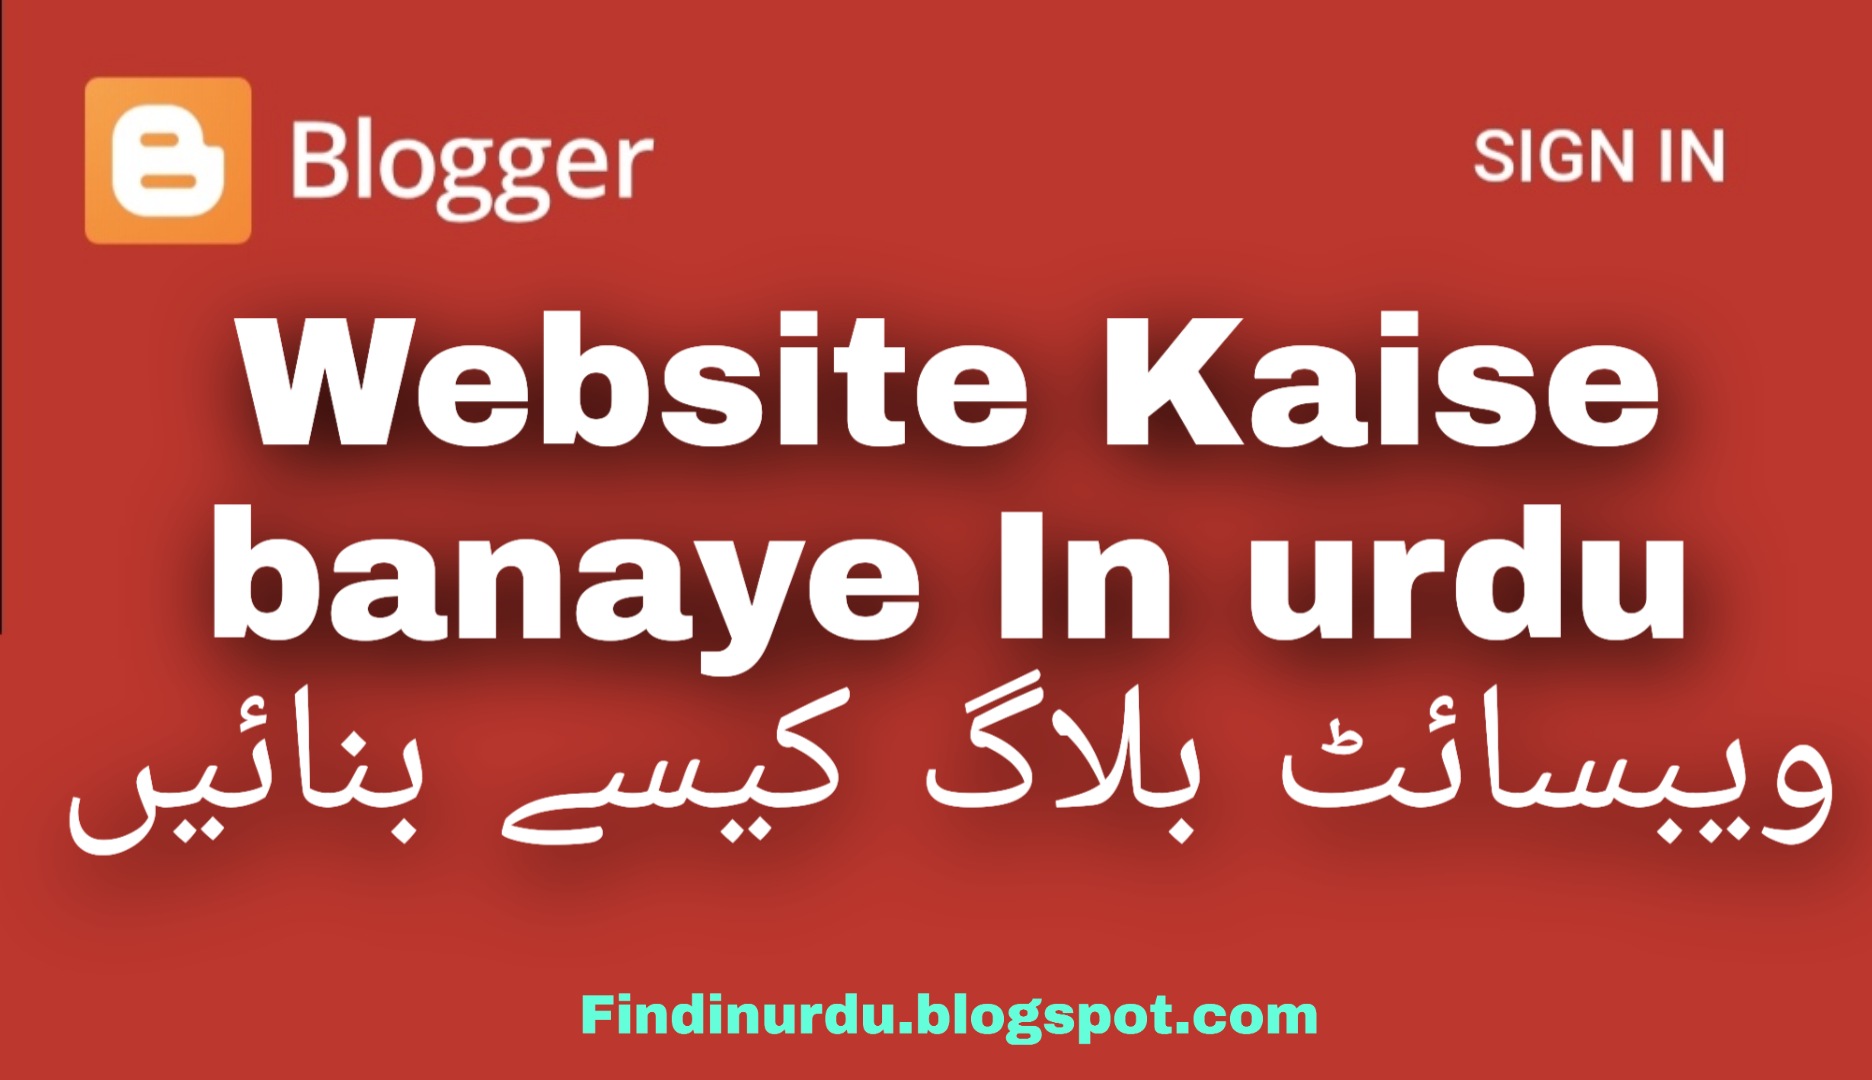 Website Kaise banaye In urdu. ویب سائٹ کیسے بنائیں